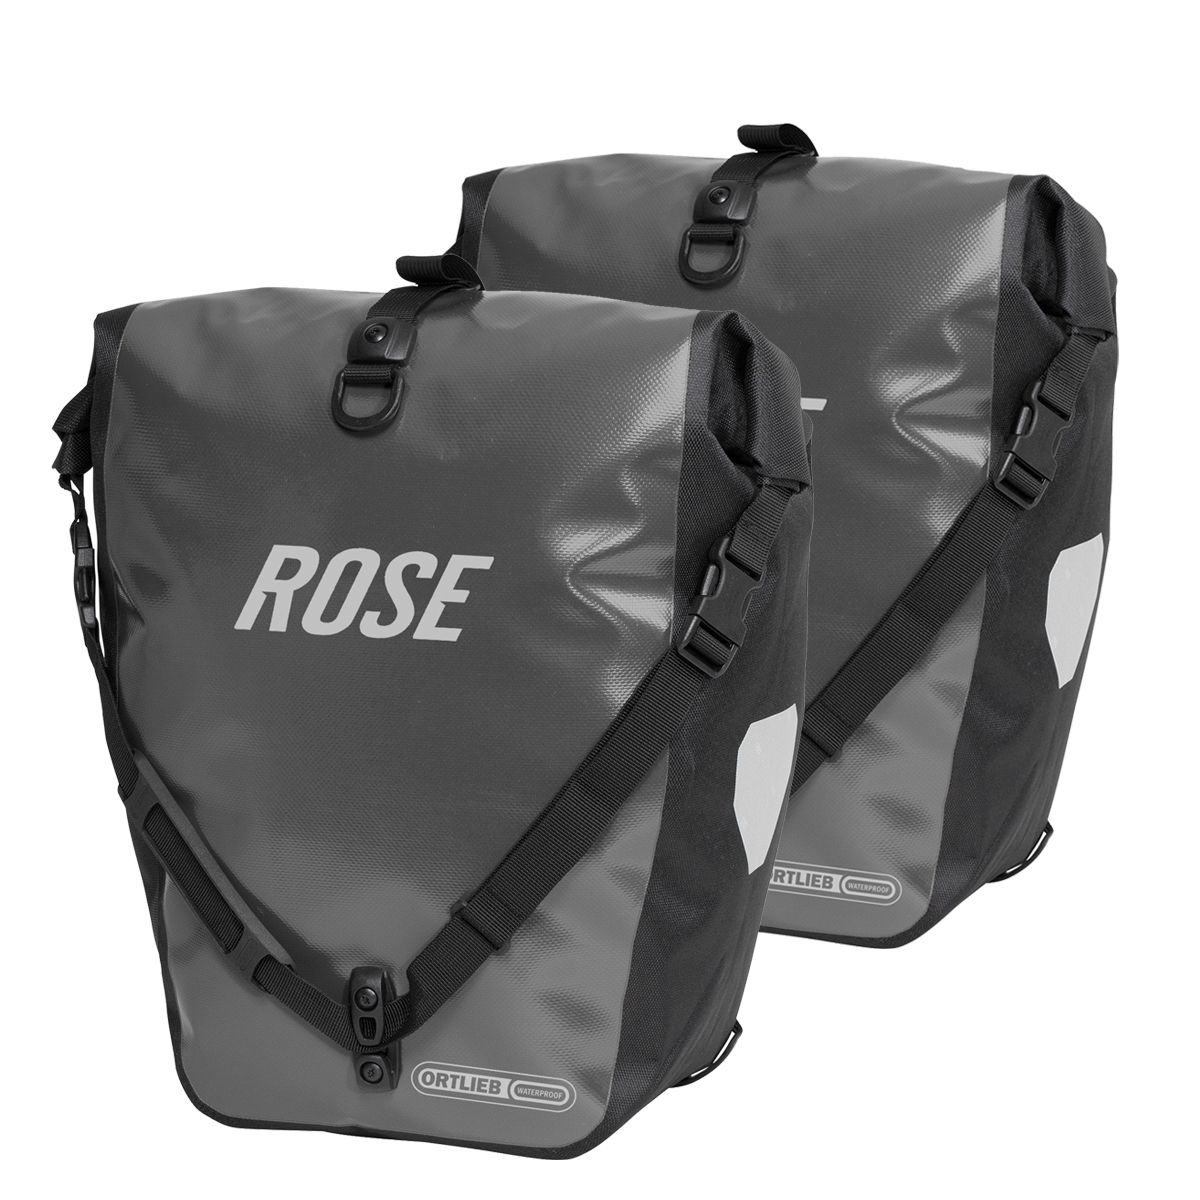 ORTLIEB-ROSE BACK ROLLER Classic Set bestehend aus zwei Gepäckträgertaschen